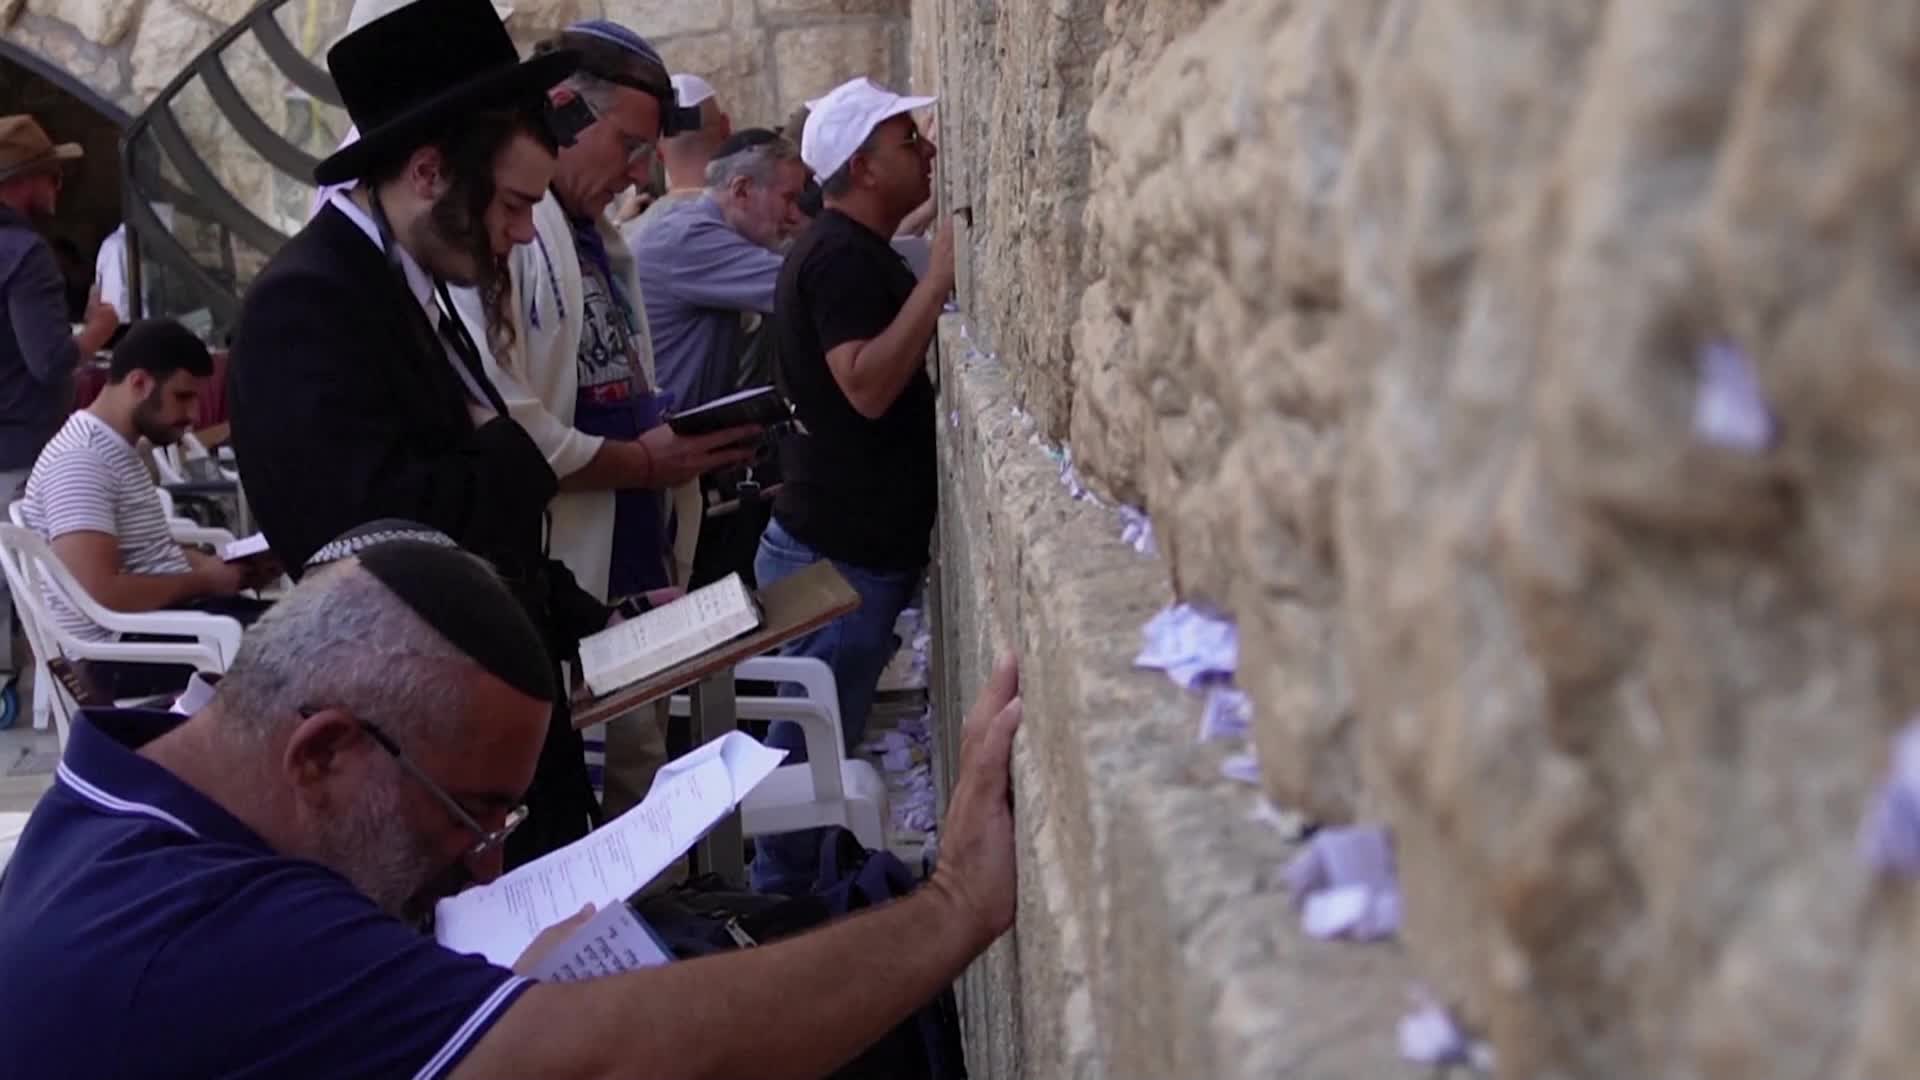 Почистиха от молитвени бележки Стената на плача в Йерусалим (ВИДЕО)